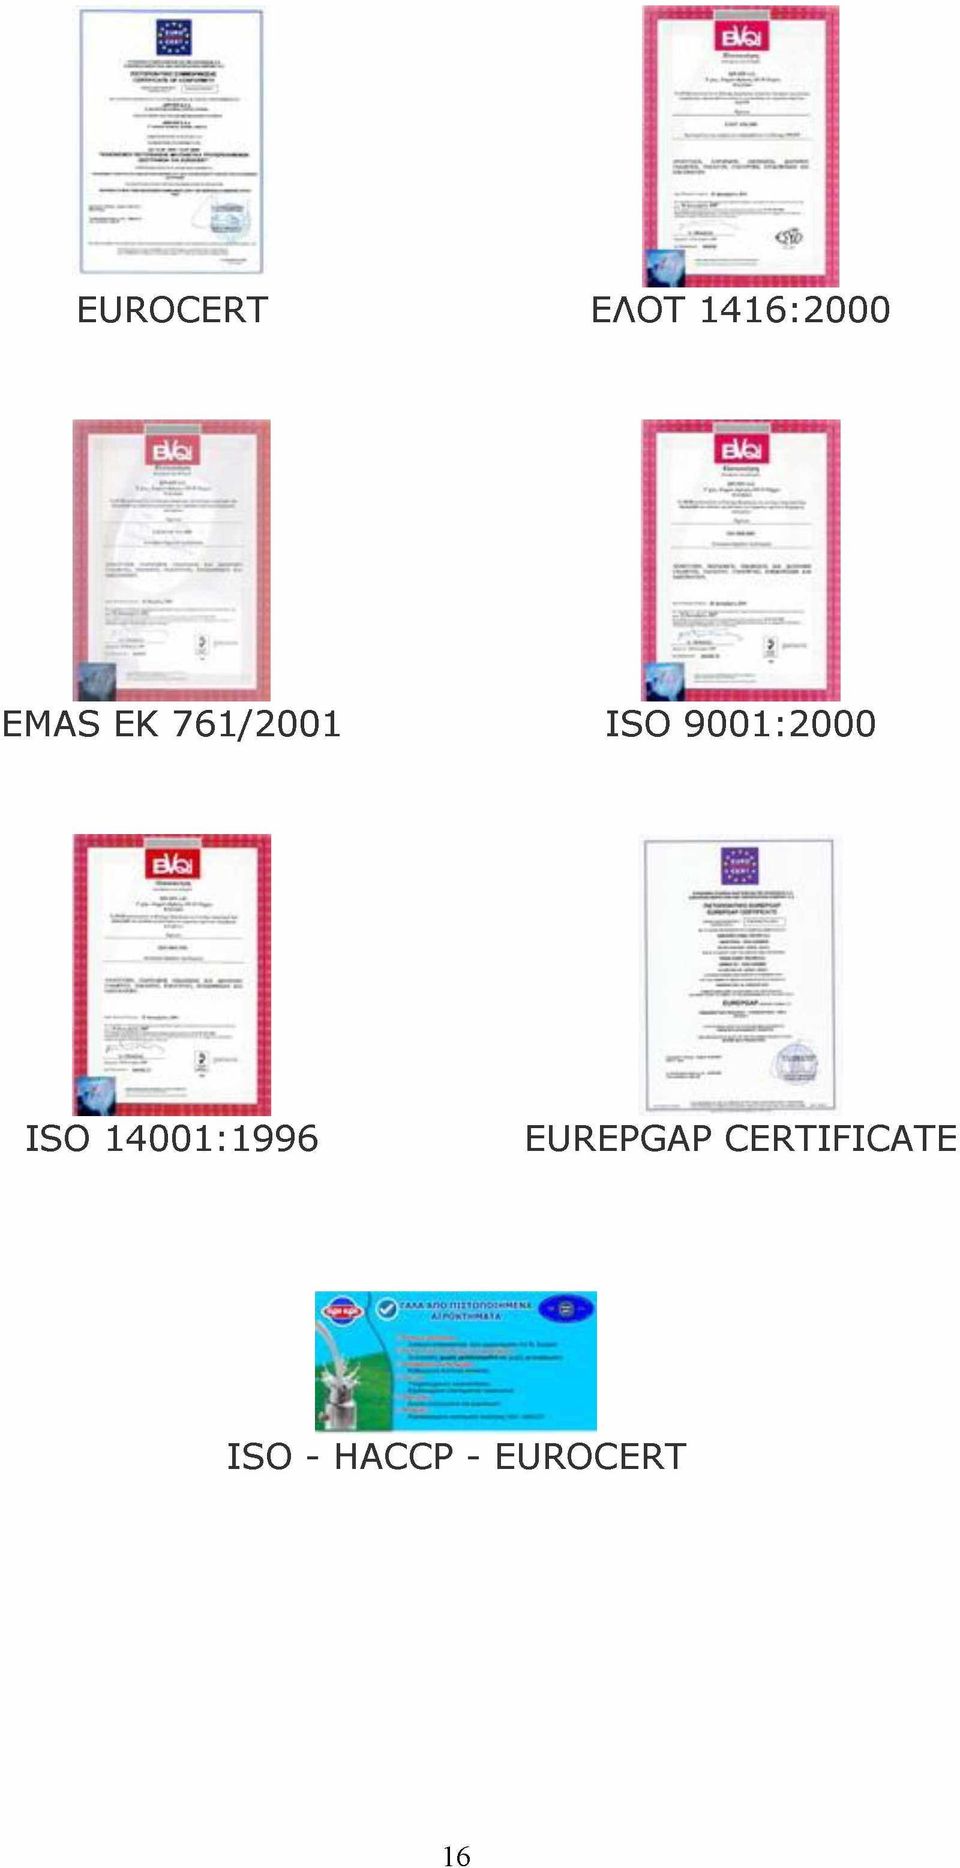 ISO 14001:1996 EUREPGAP